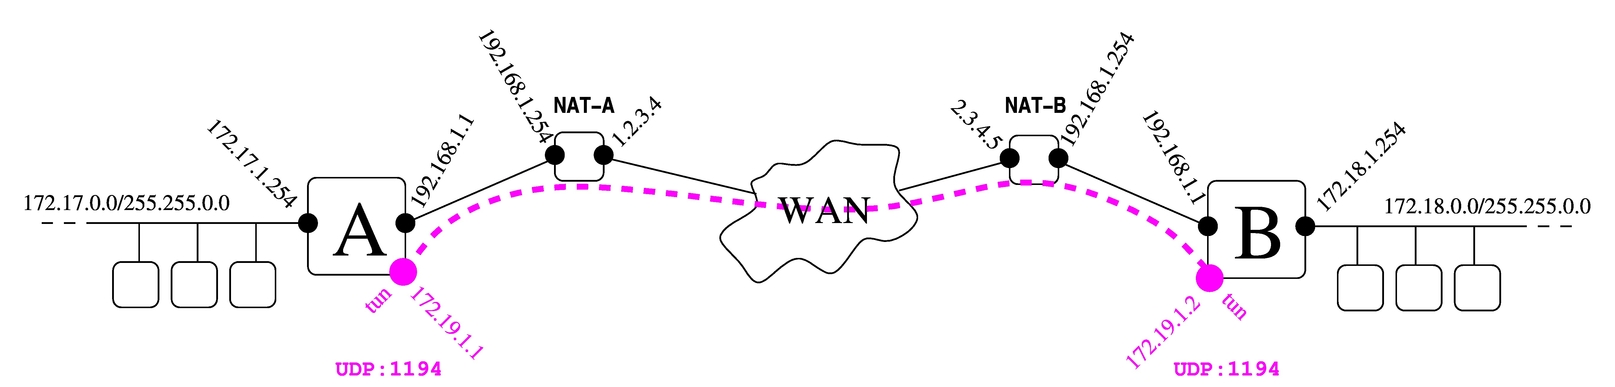 due reti private connesse assieme attraverso un tunnel, con la mediazione di router NAT